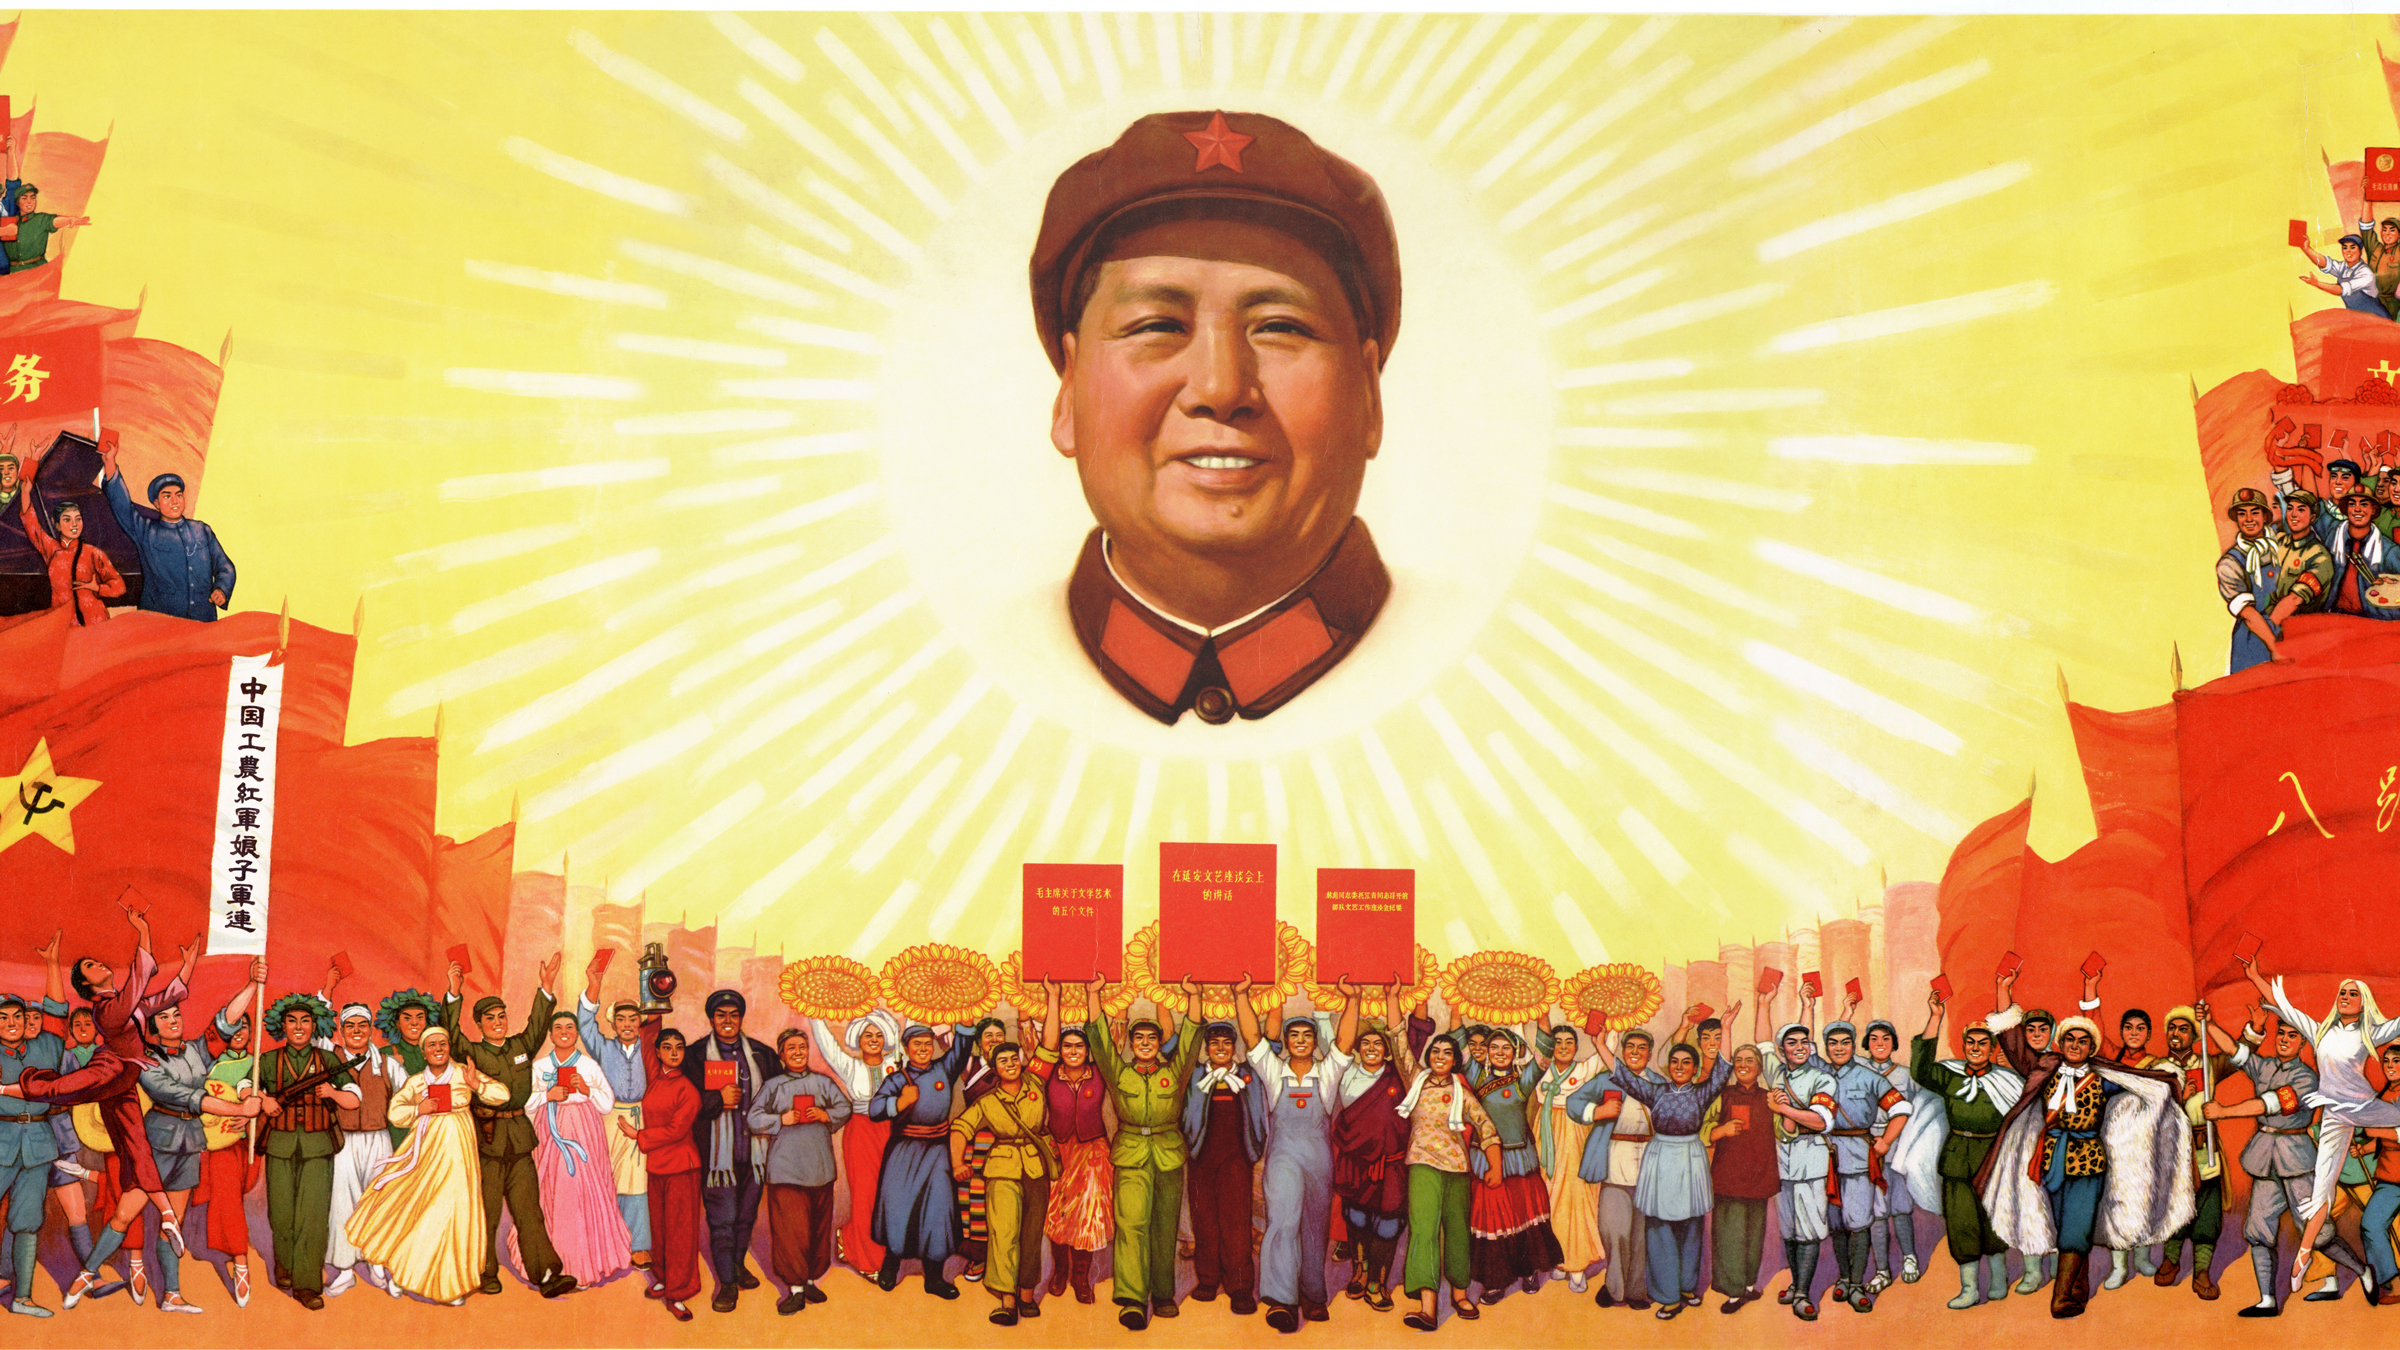 Mao as the Sun 2400x1300 px.jpg